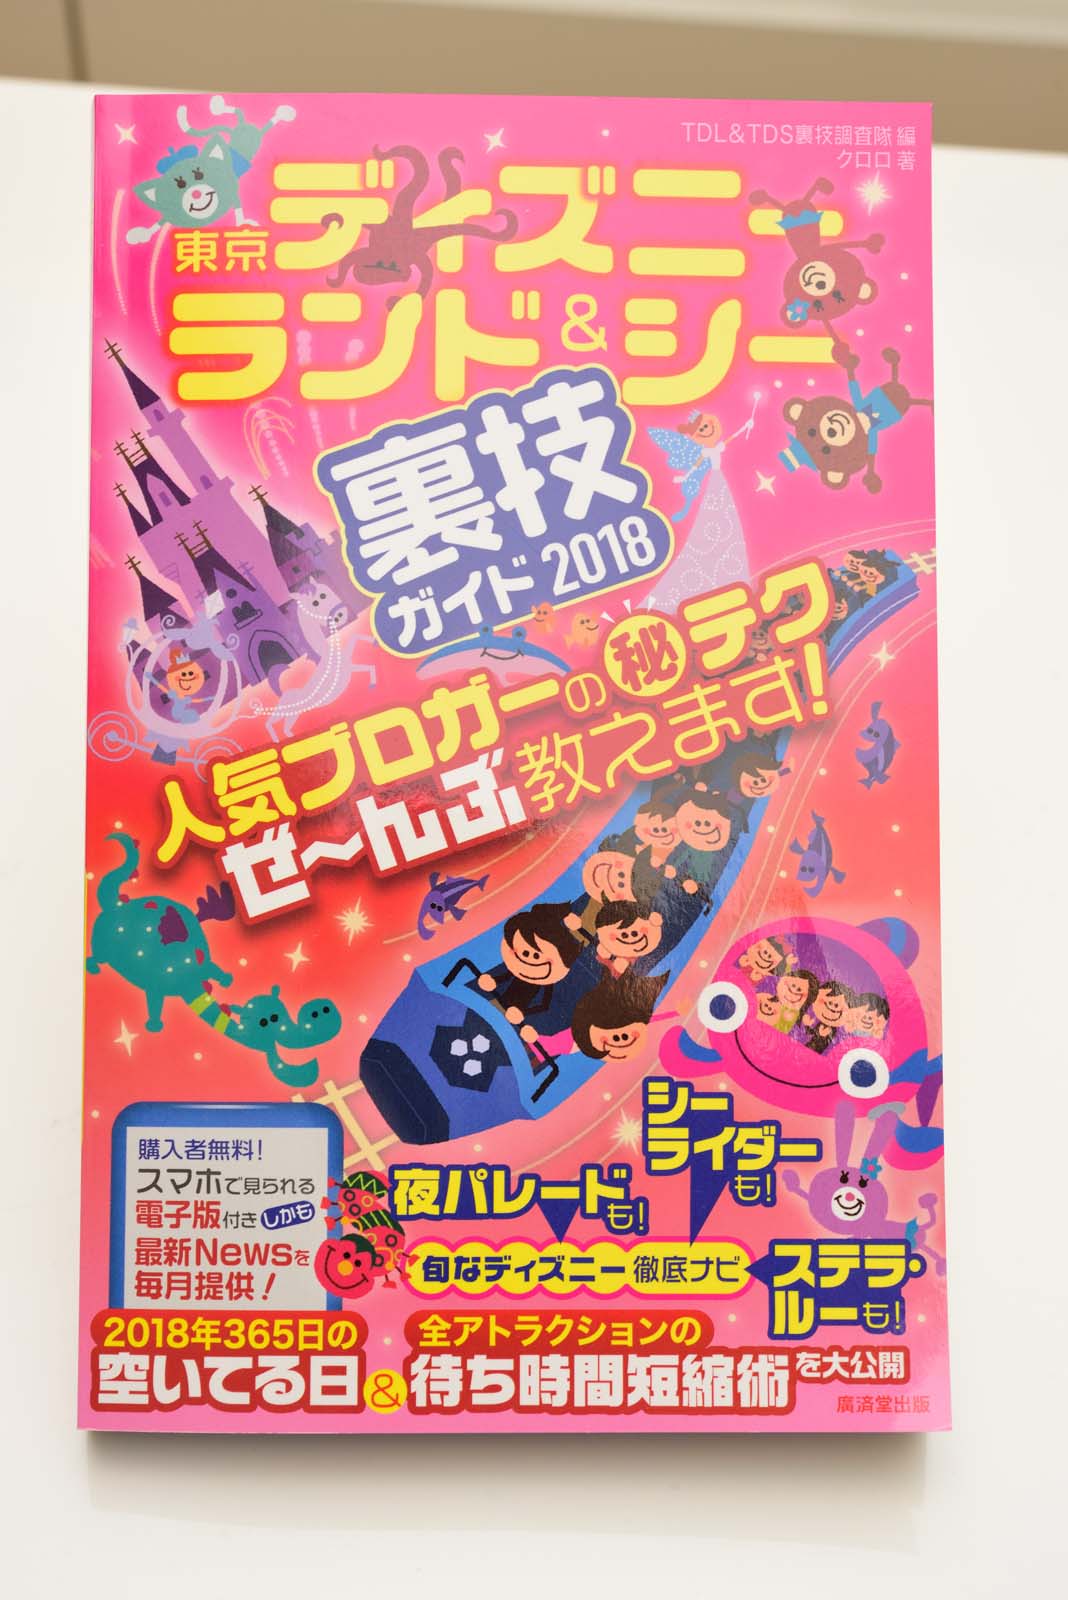 執筆ガイド本の最新版 東京ディズニーランド シー裏技ガイド 18 が10月28日に発売 Disney Colors Blog